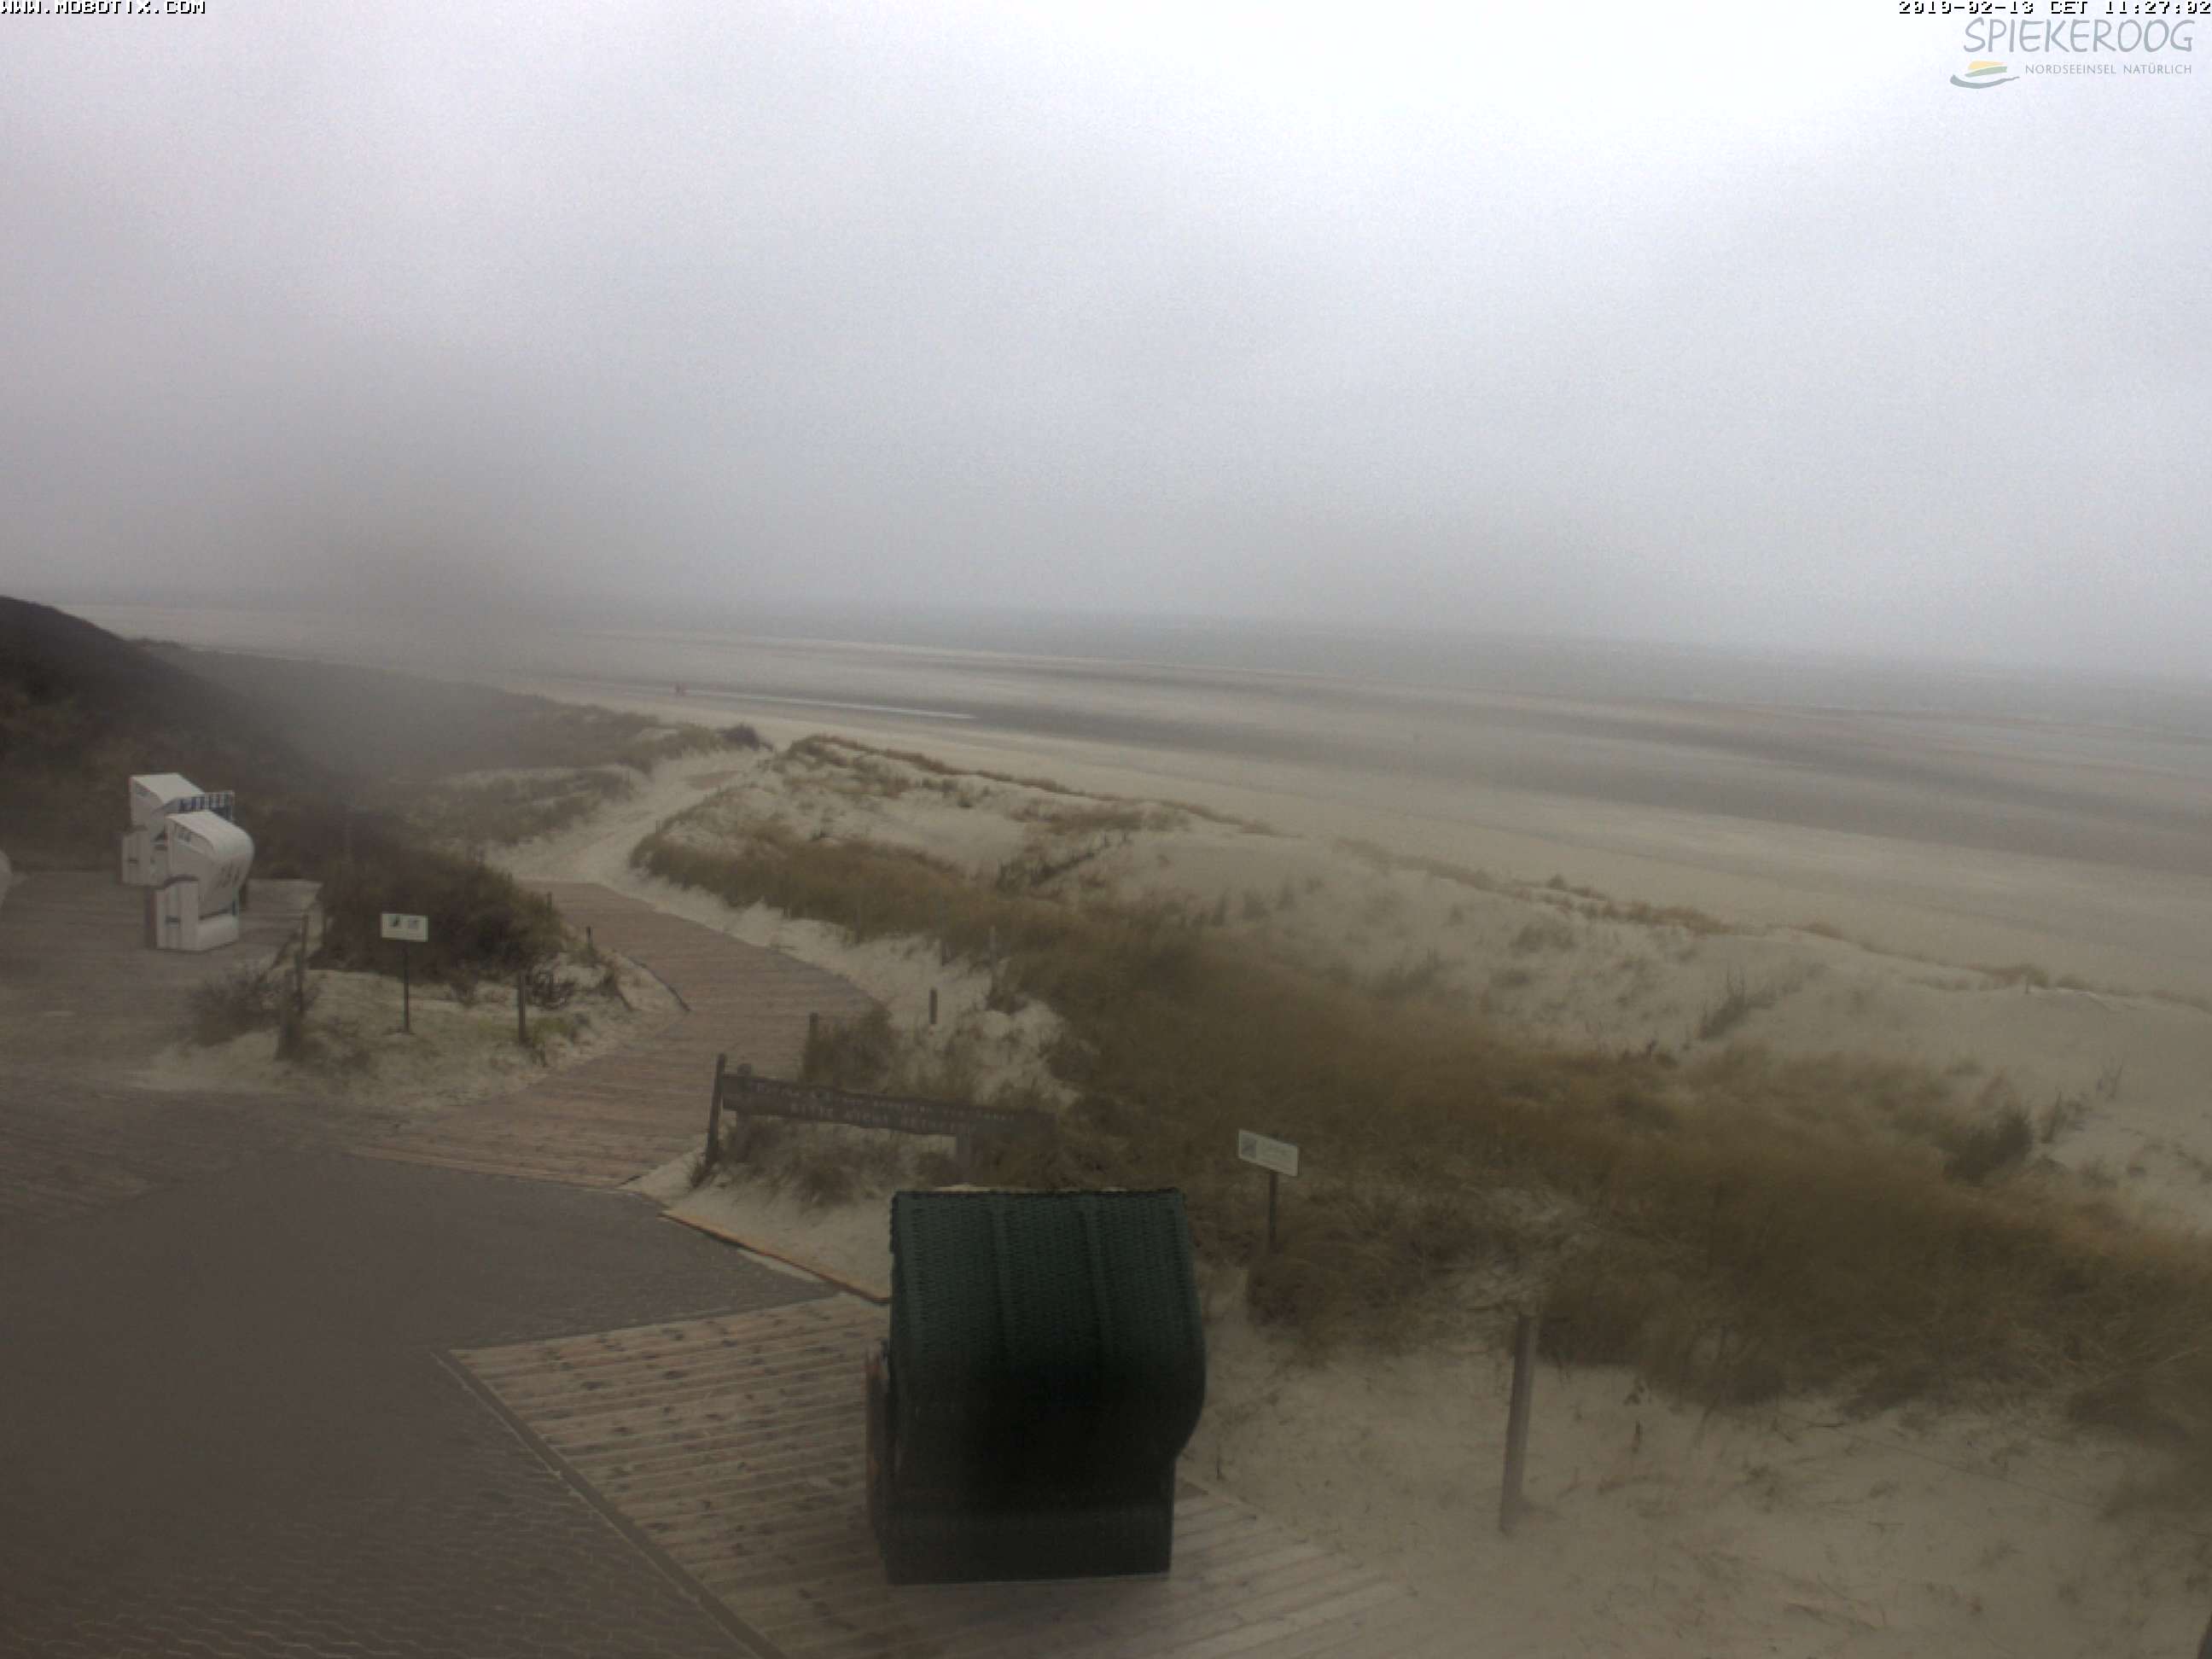 Spiekerooger Strand - Webcam wird jede Minute aktualisiert